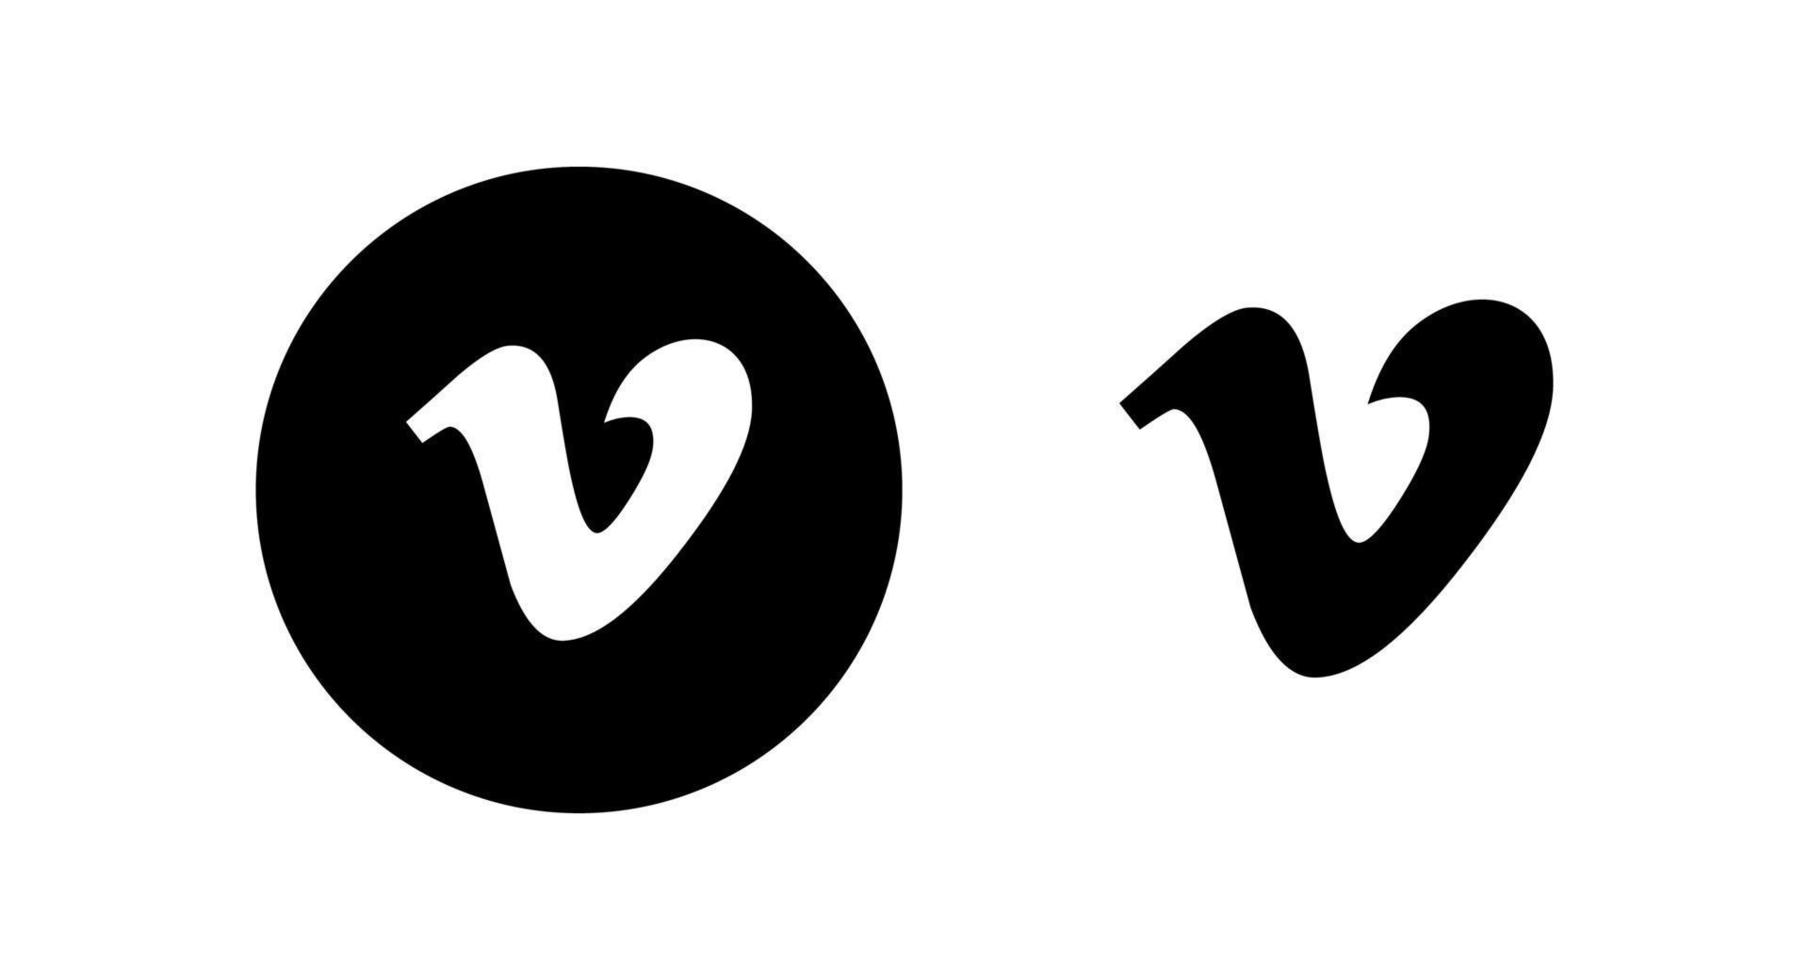 logotipo do vimeo, símbolo do vimeo, vetor grátis do ícone do vimeo